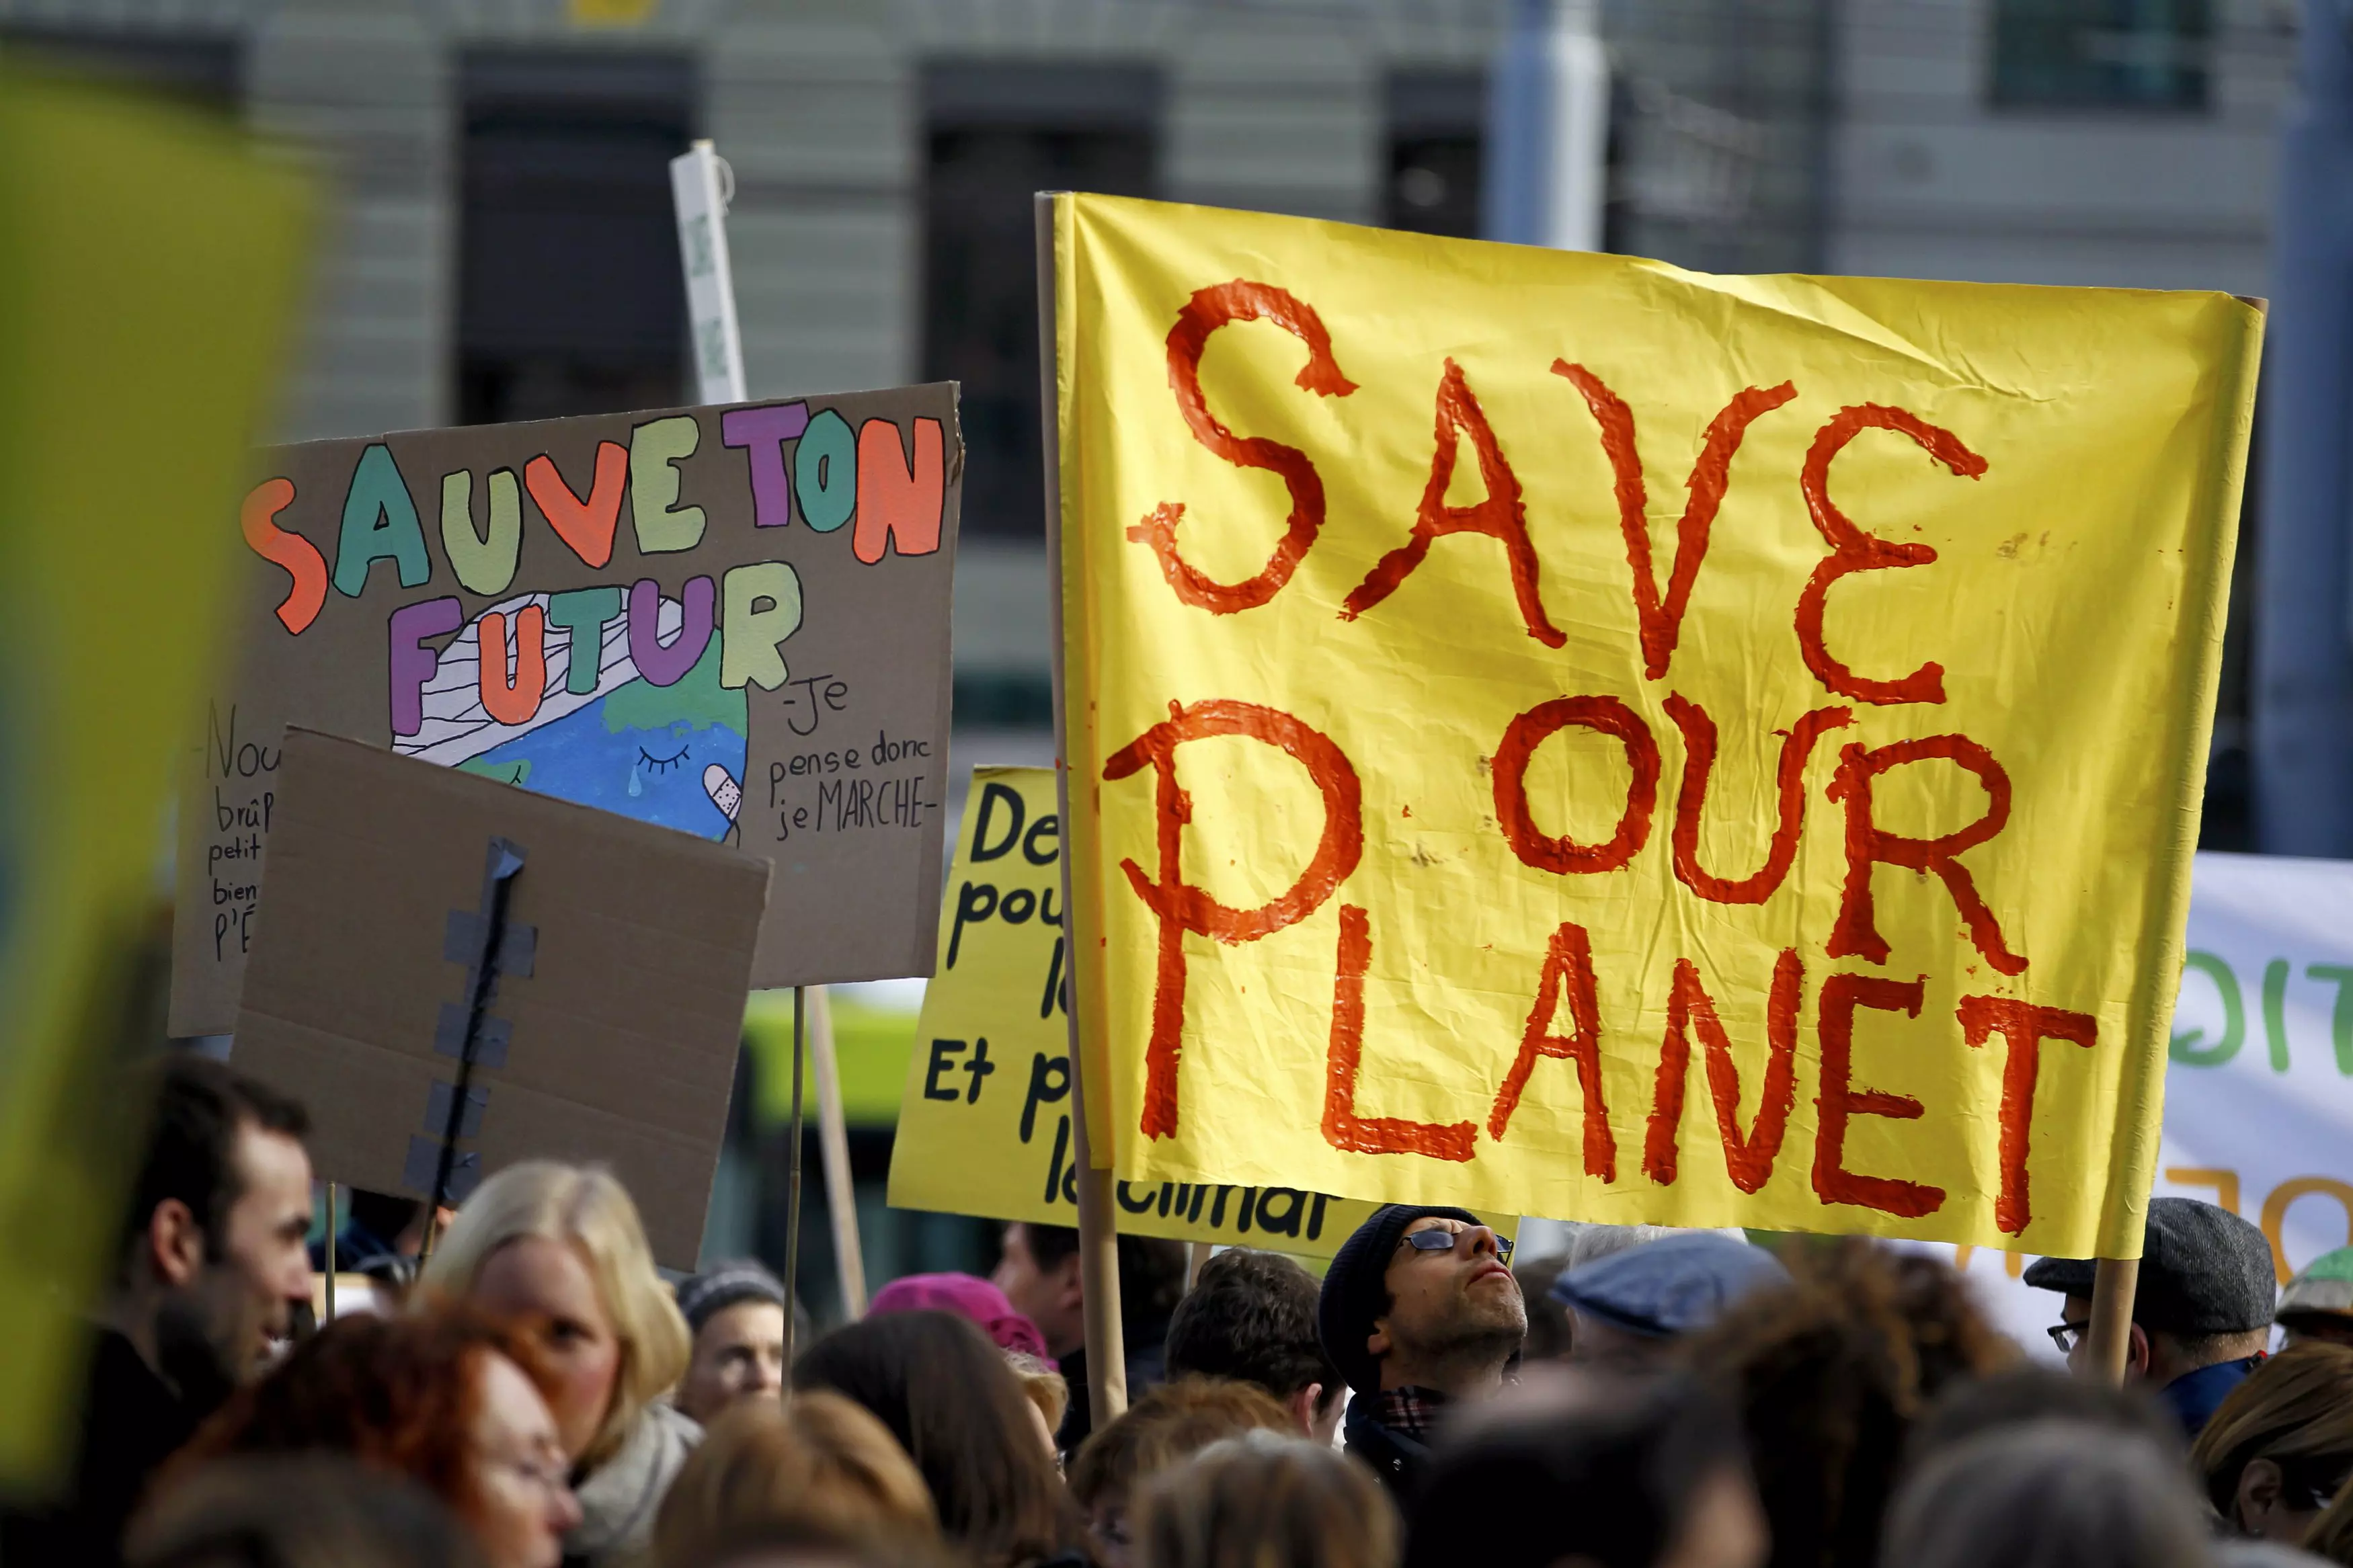 "הצילו את כדור הארץ". ברחבי העולם, מפגינים יצאו לרחובות לקראת הוועידה